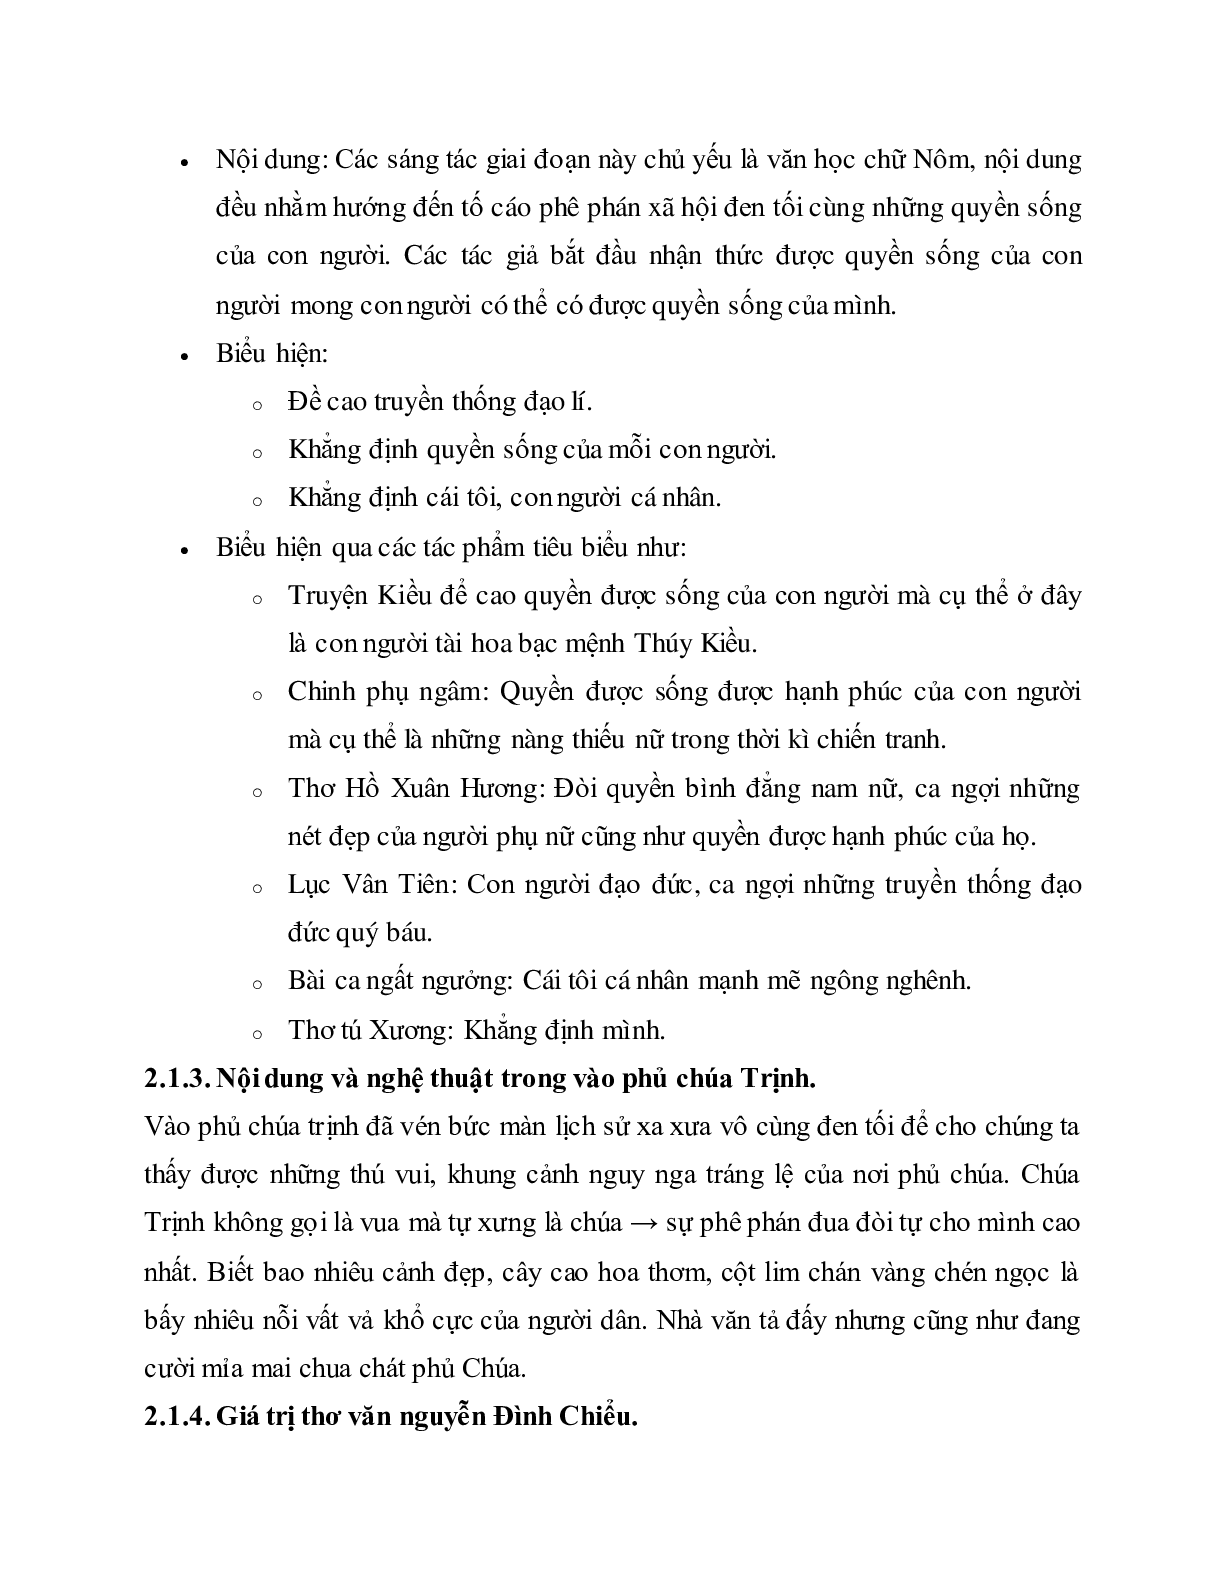 Soạn bài Ôn tập văn học trung đại Việt Nam - ngắn nhất Soạn văn 11 (trang 7)